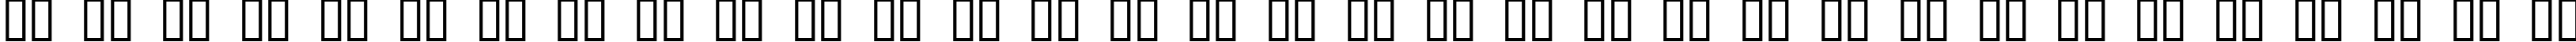 Пример написания русского алфавита шрифтом Direction